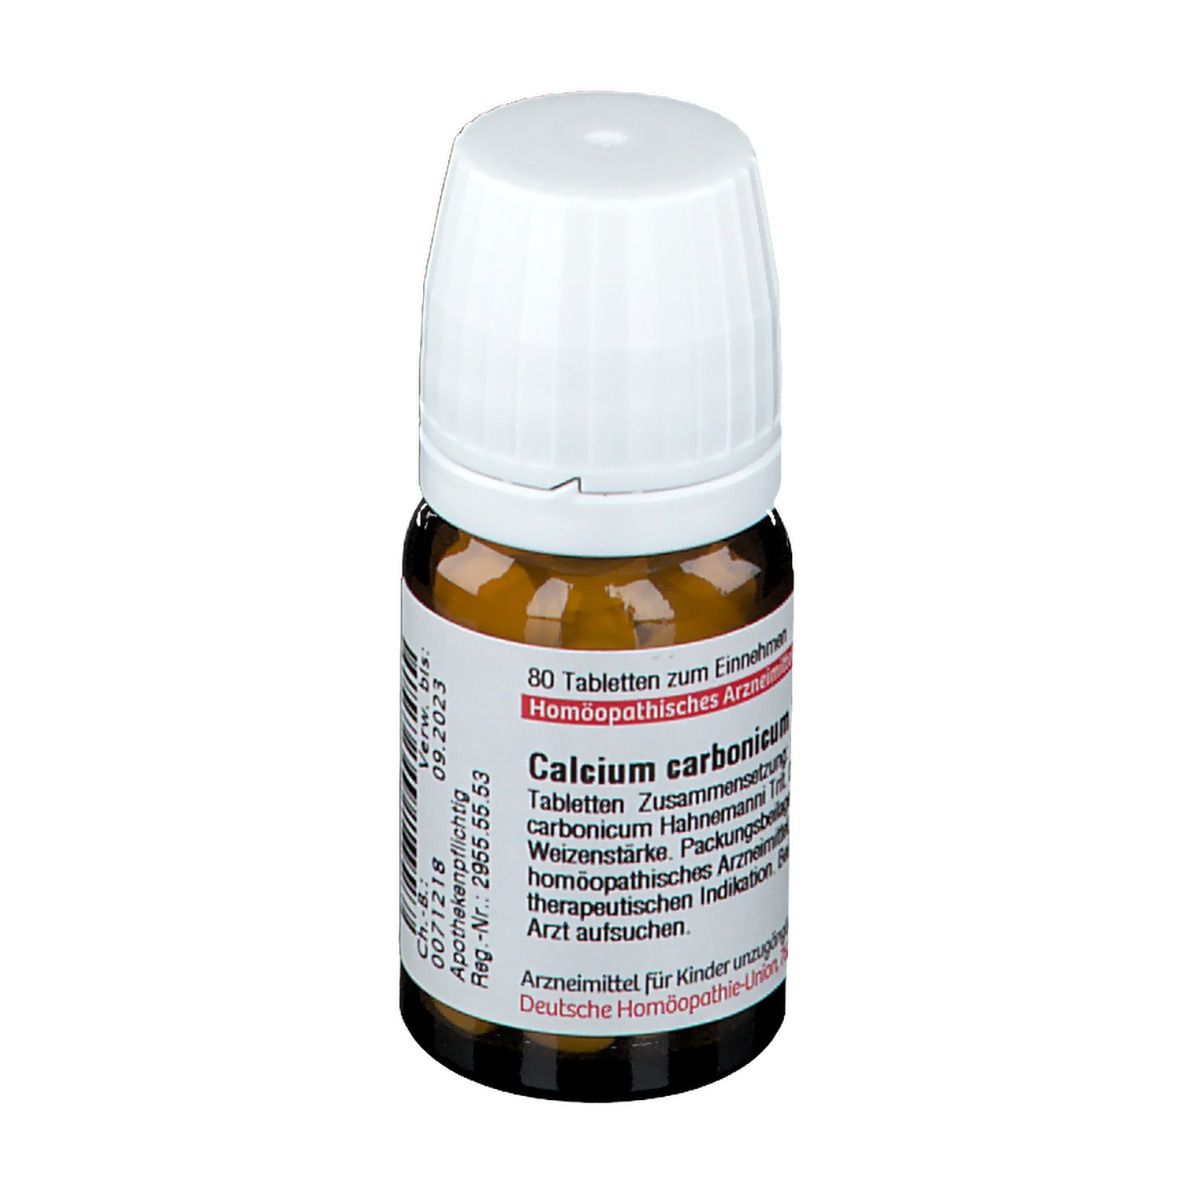 DHU Calcium Carbonicum Hahnemanni D3